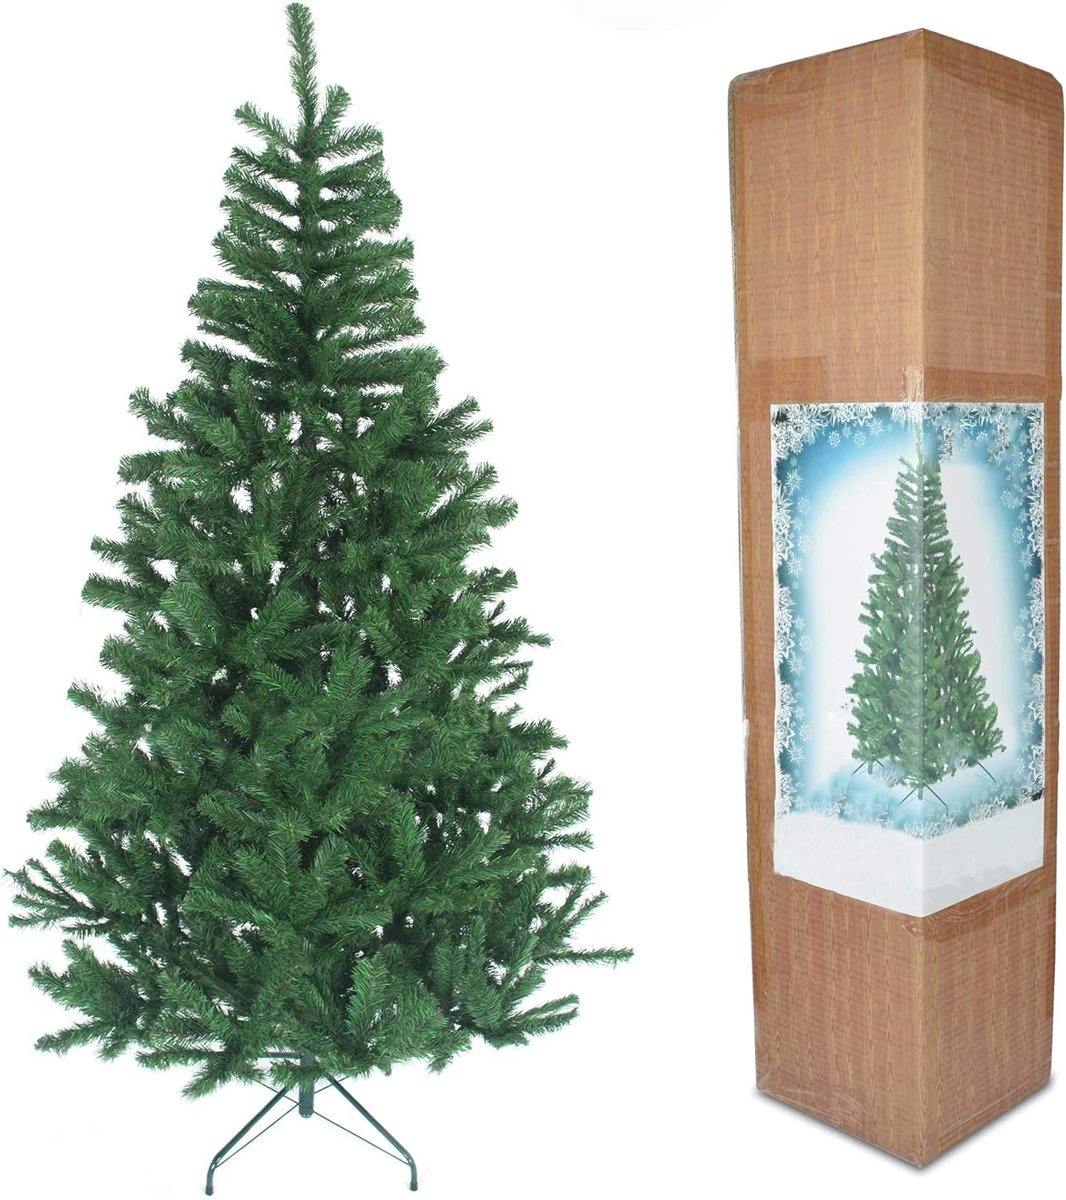 Alaskaanse dennen zwart/groen/witte kerst, vol ogende kunstboom met metalen standaard voor kerstdecor in huis, PVC, 180 cm